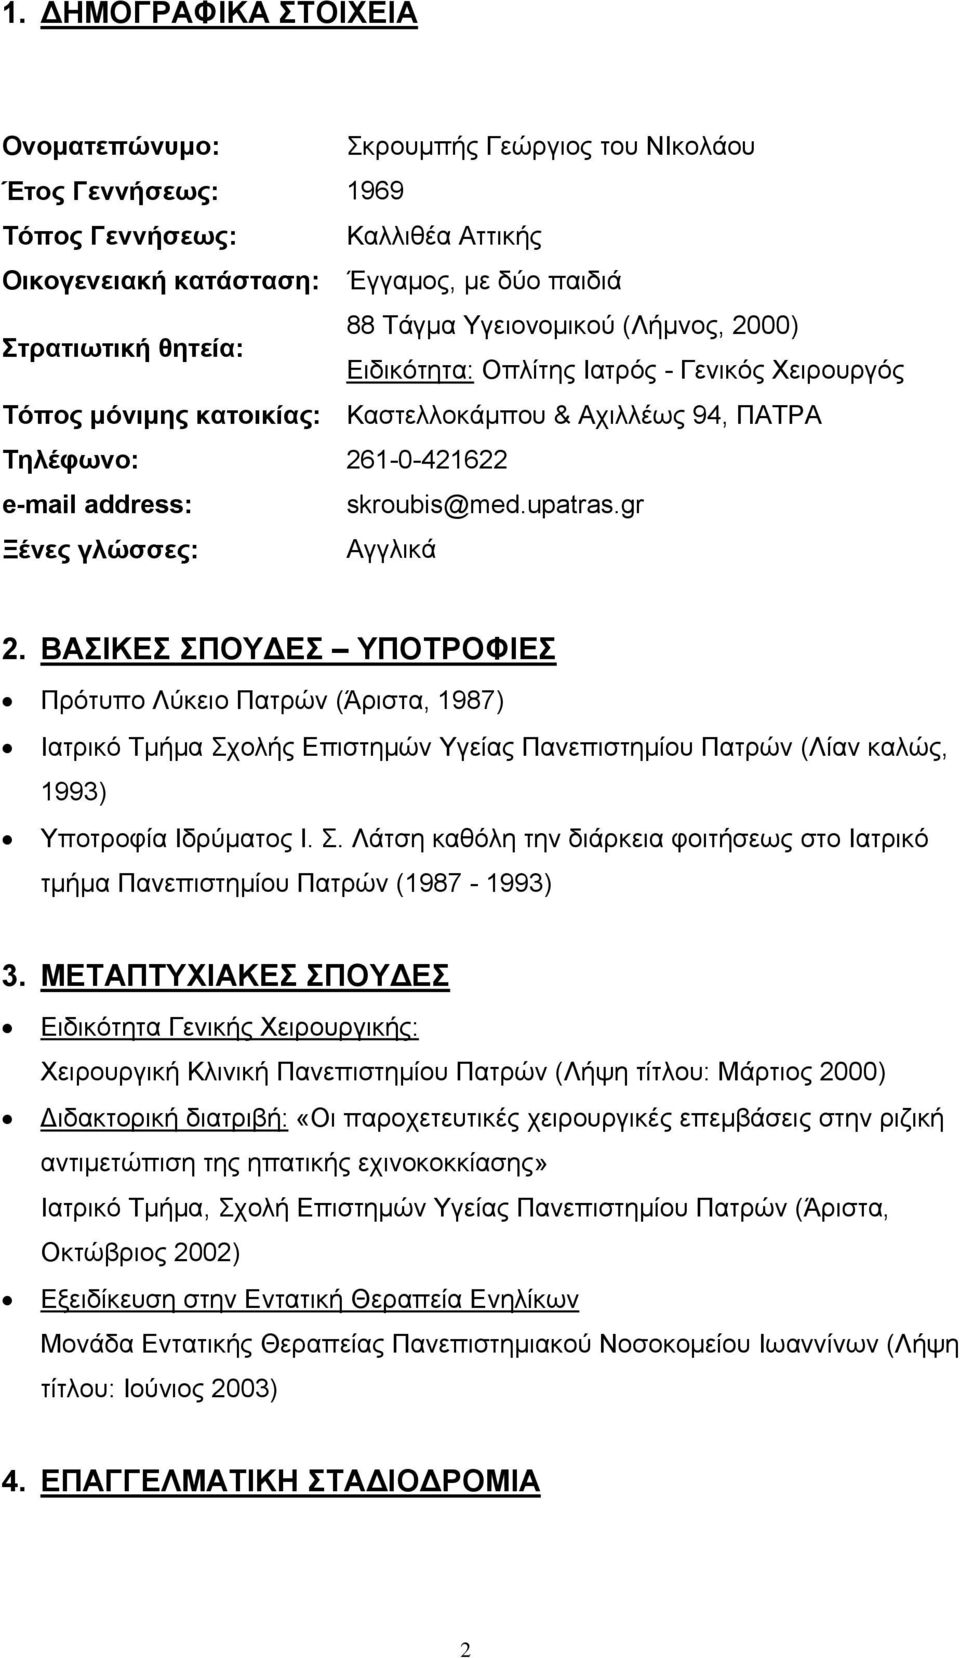 upatras.gr Ξένες γλώσσες: Αγγλικά 2.